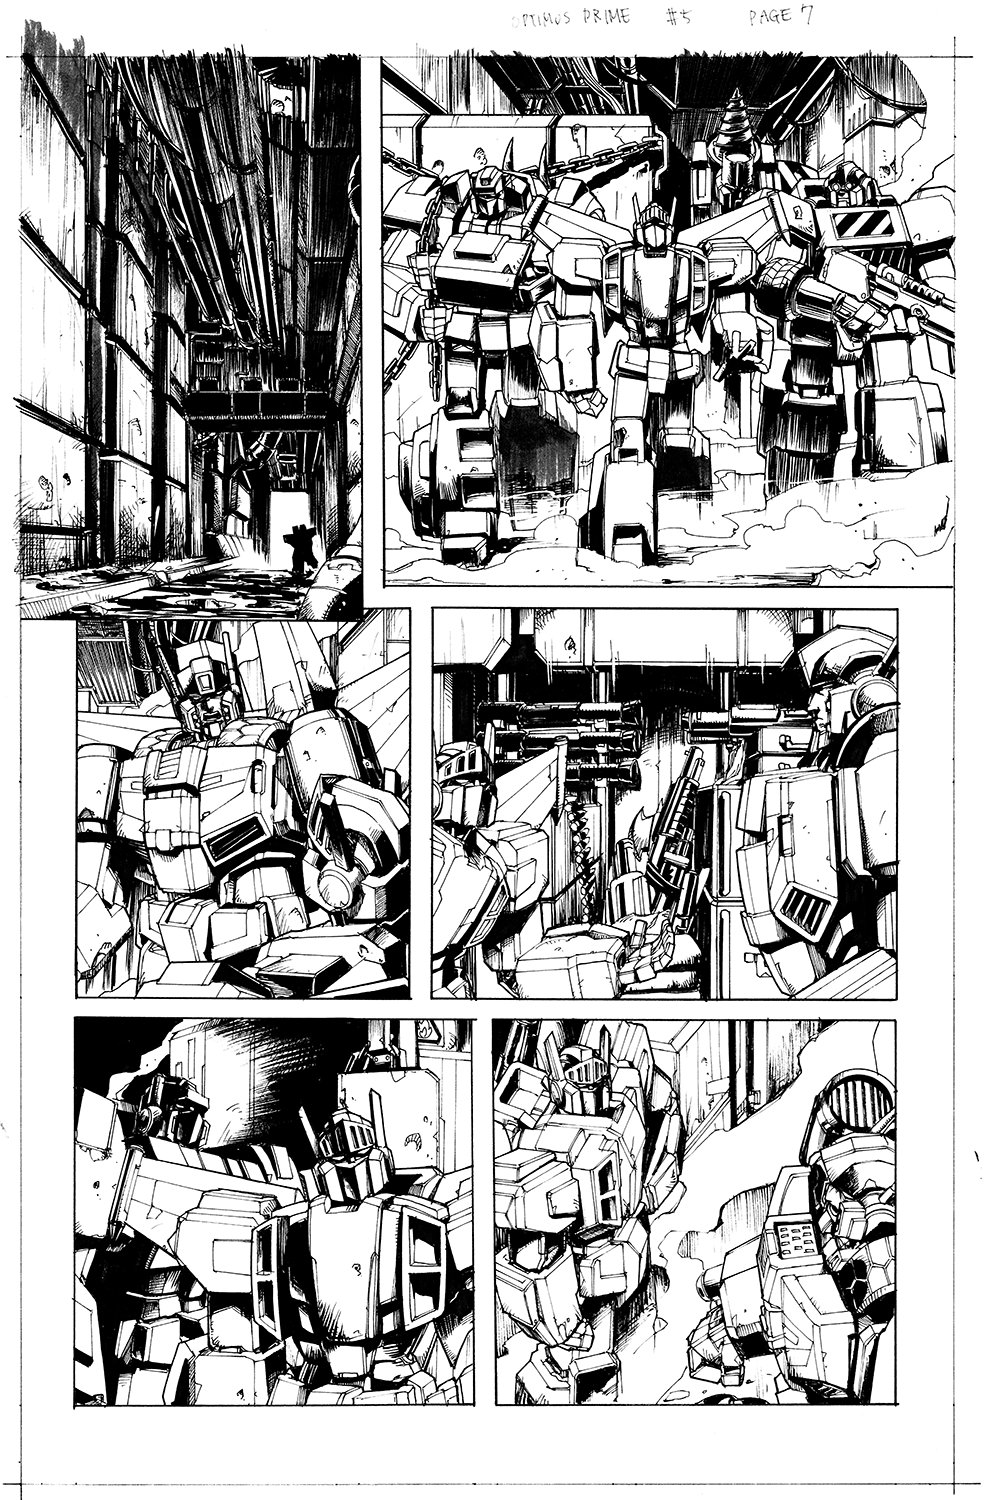 Optimus Prime #5 Page 07